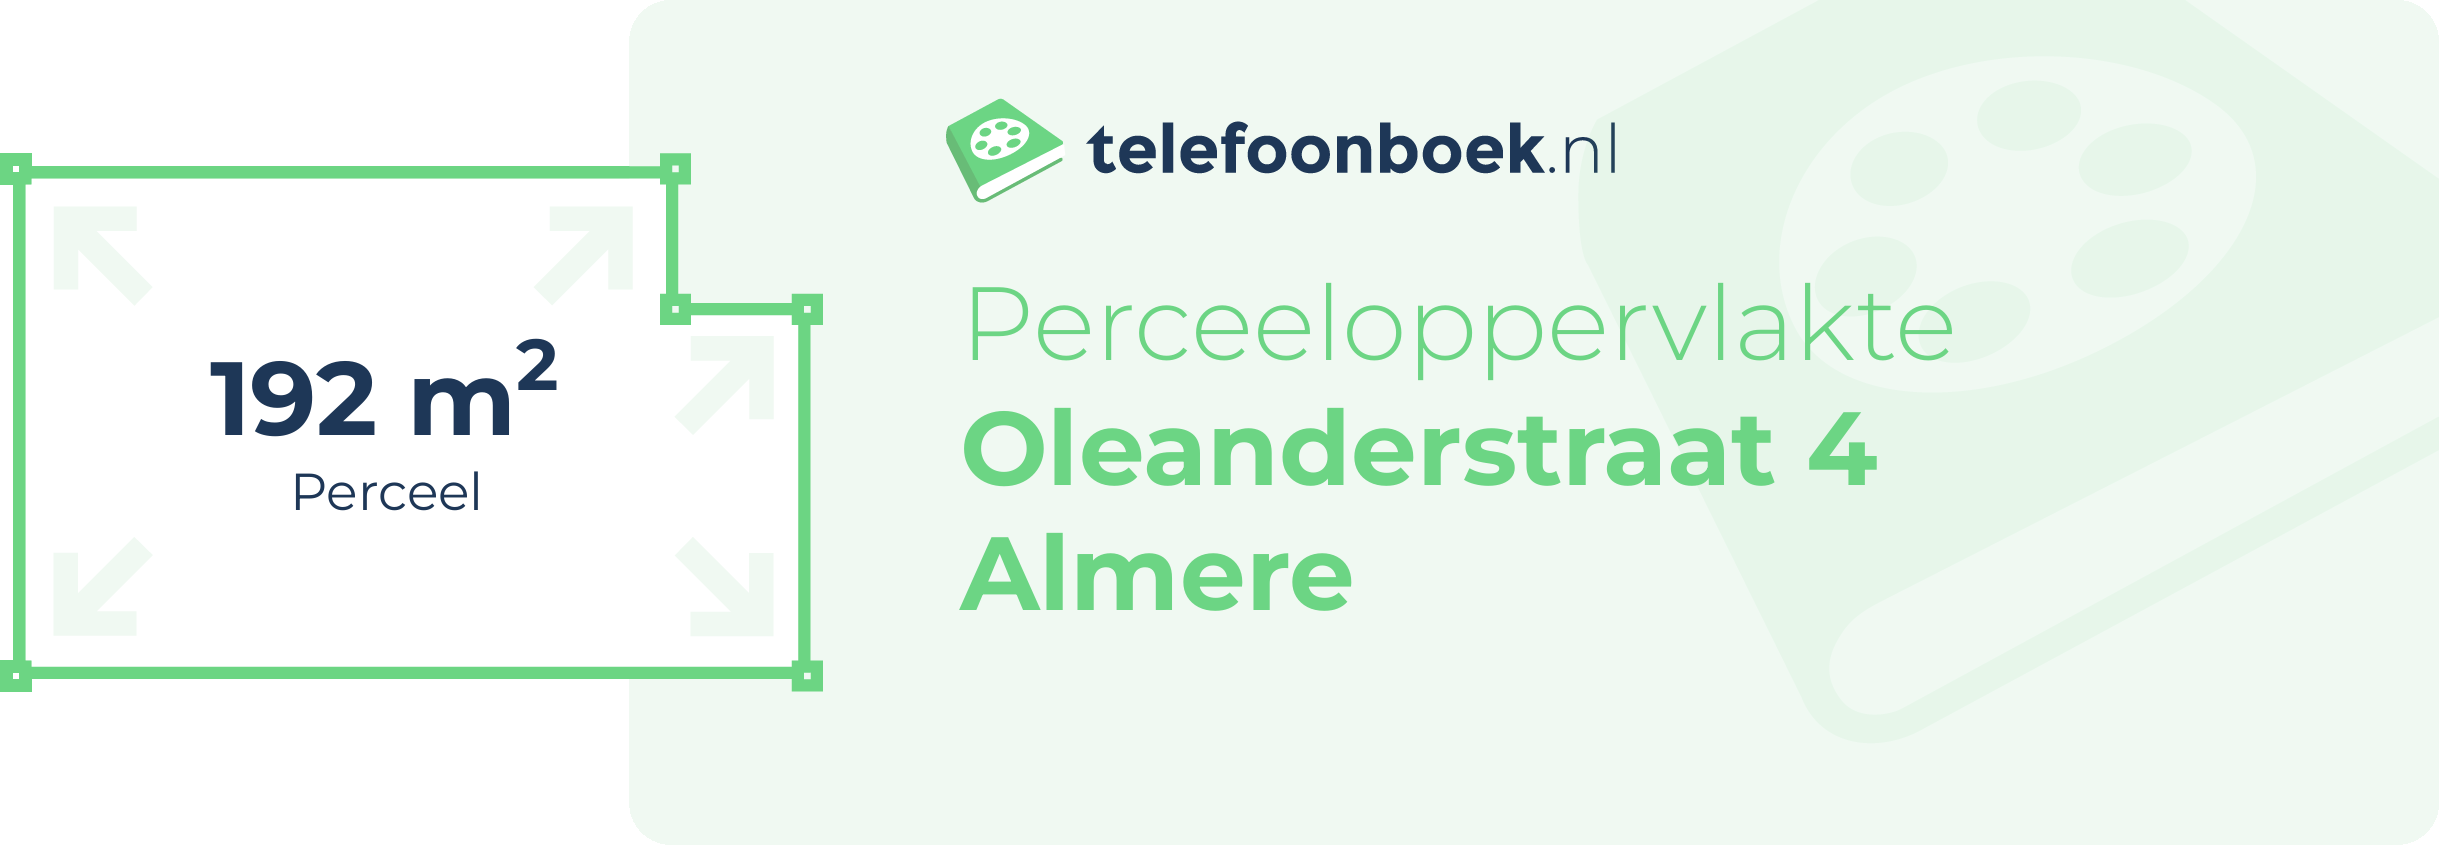 Perceeloppervlakte Oleanderstraat 4 Almere